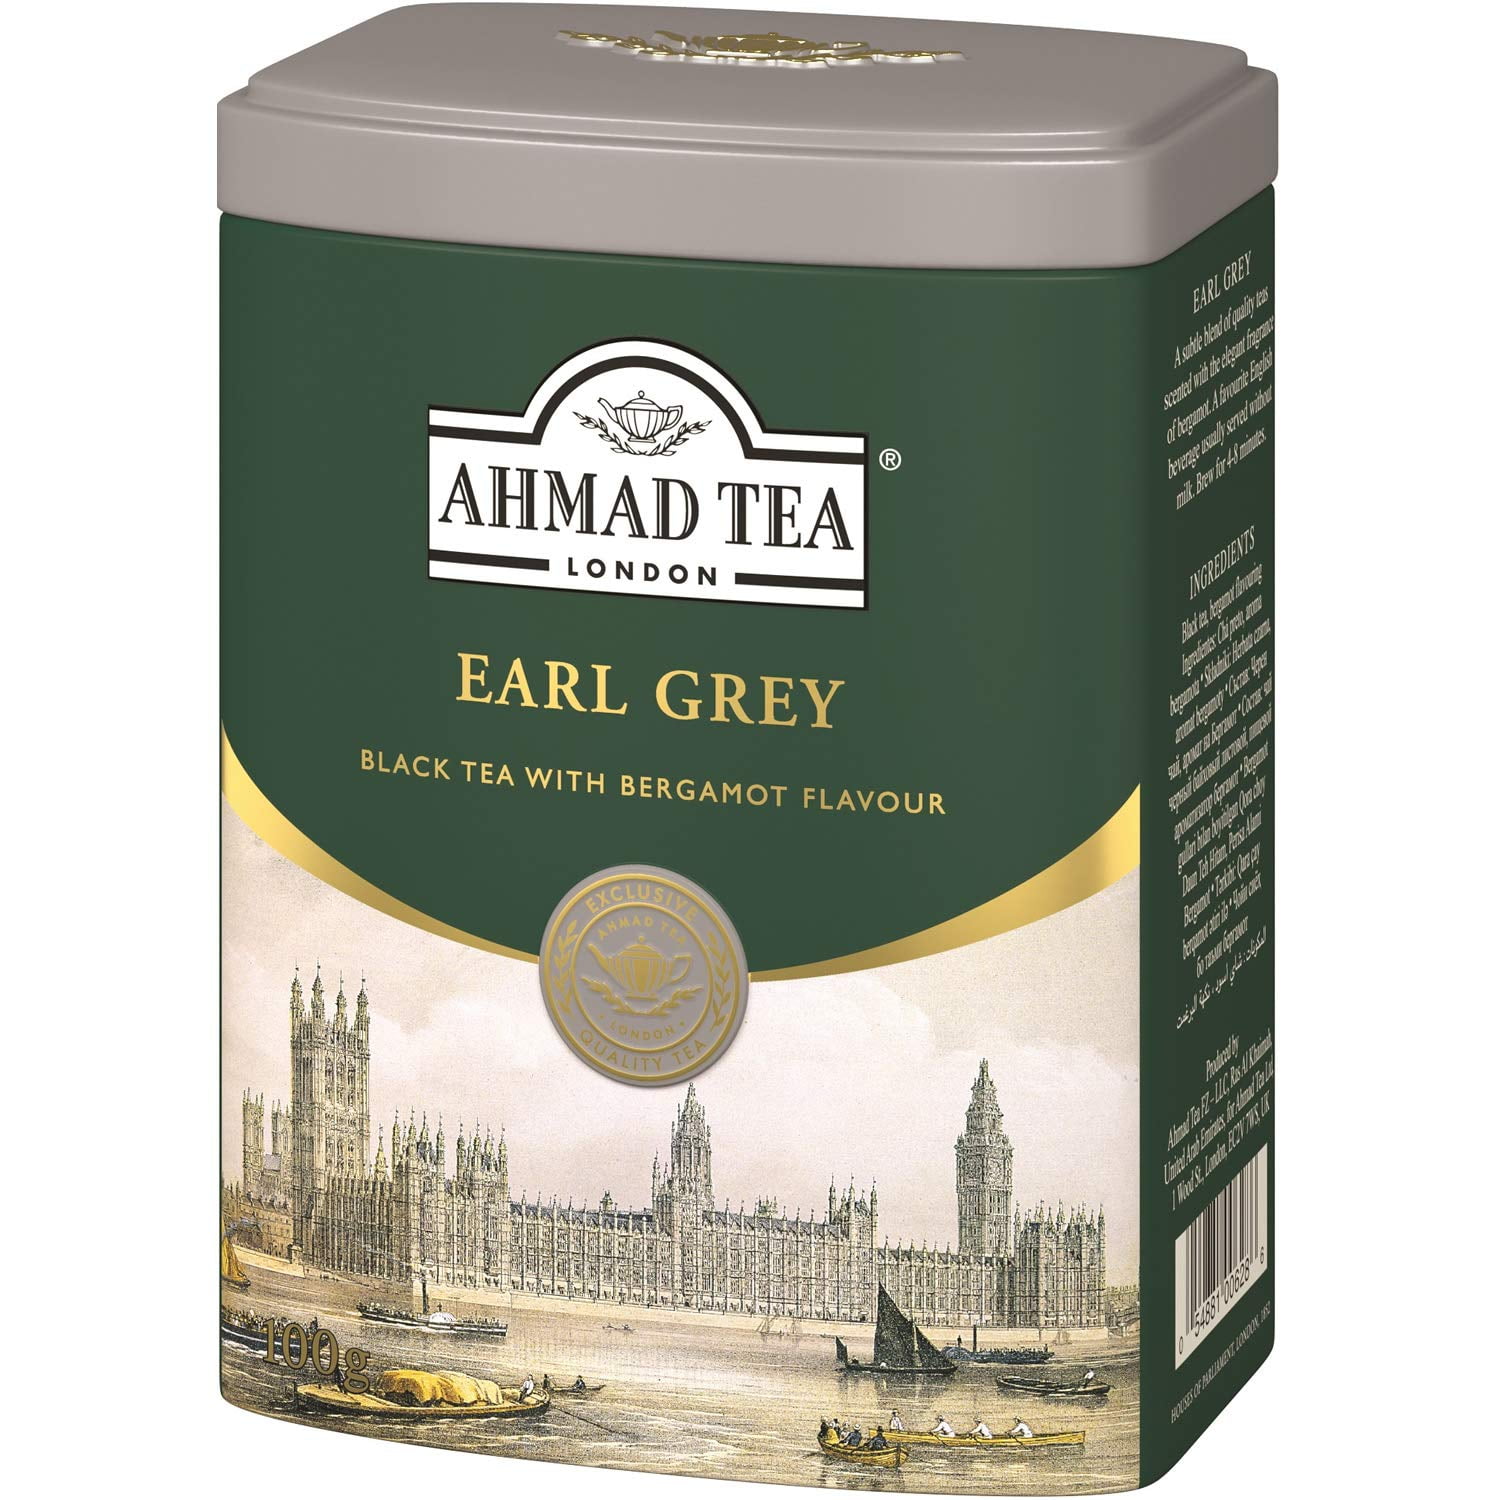 AHMAD TEA Earl Grey Tea Tin 100 gm PACK OF 2 - Walmart ...